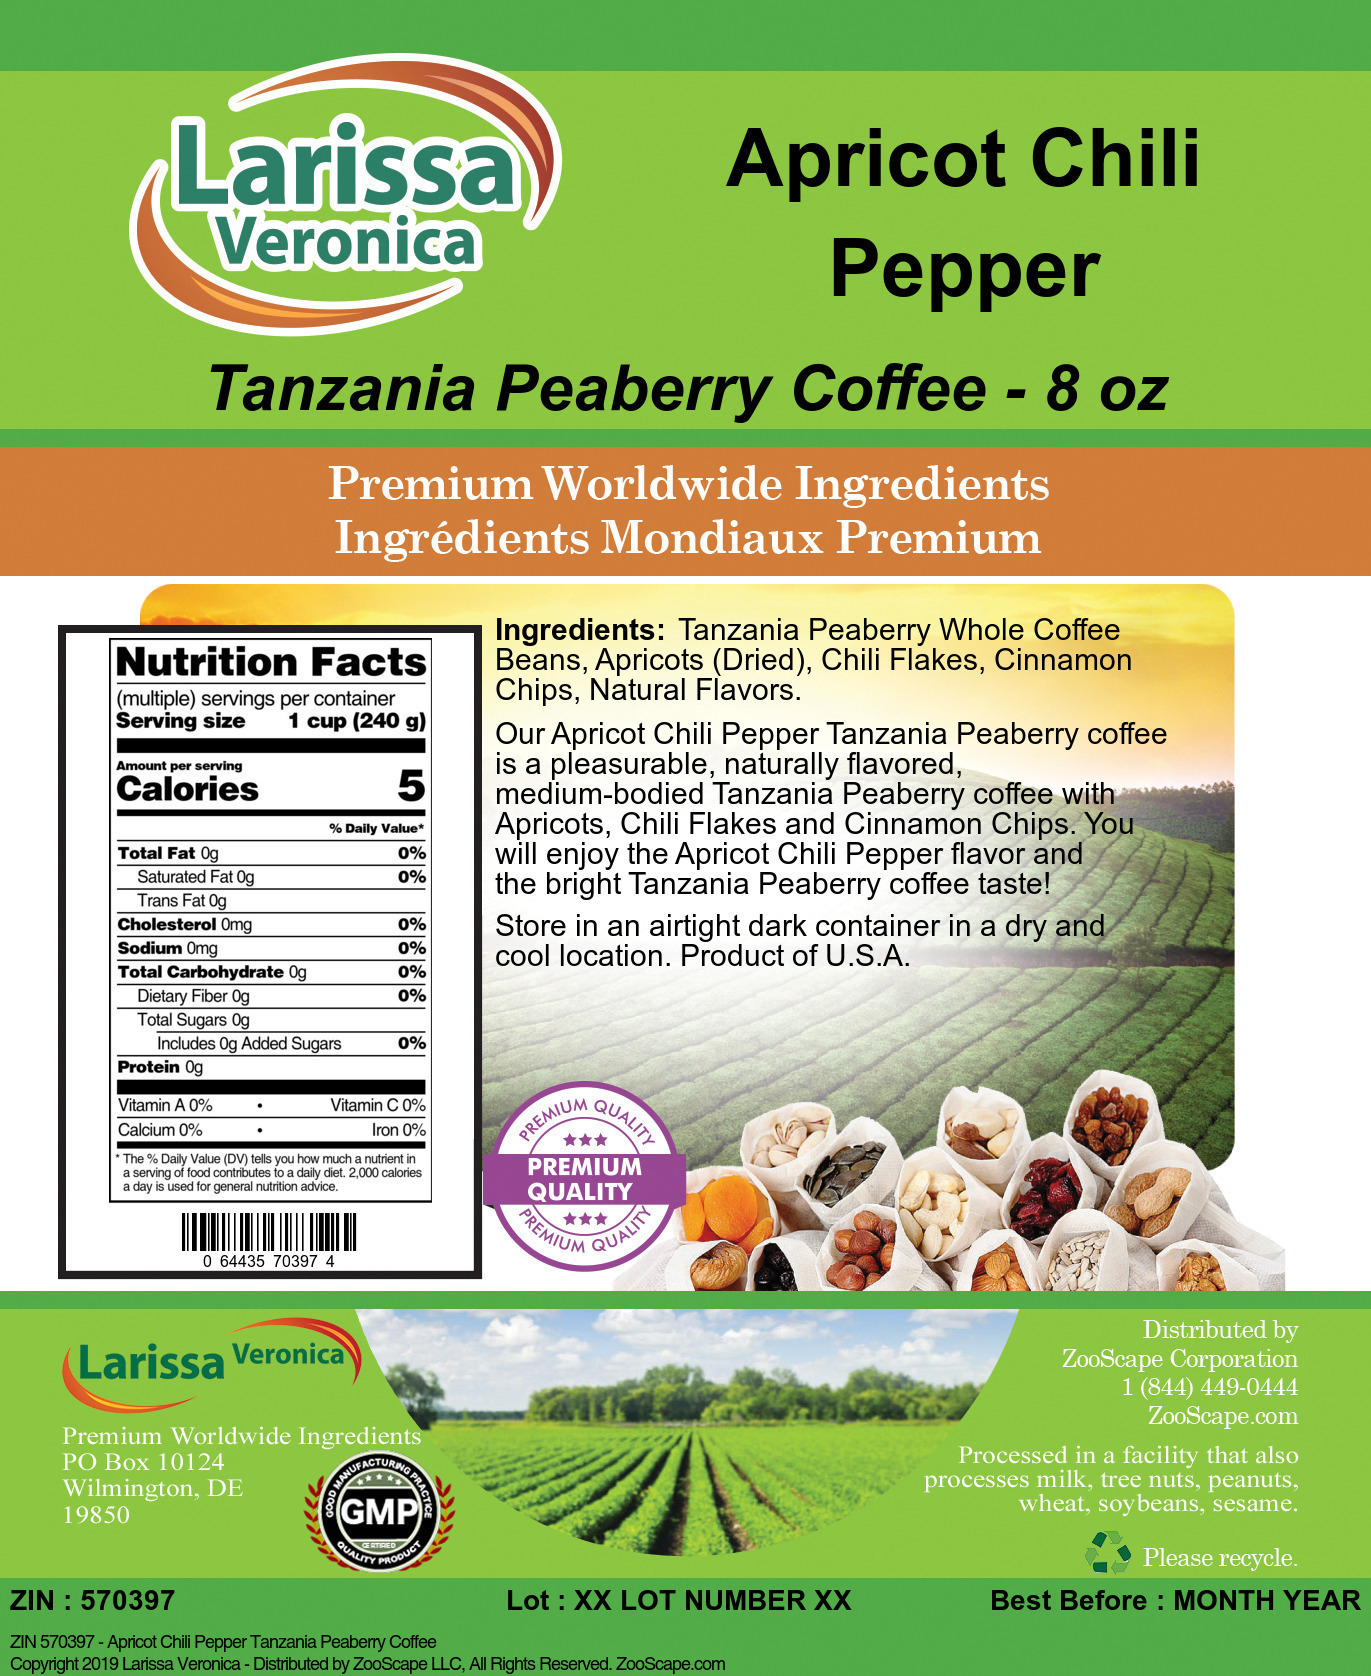 Apricot Chili Pepper Tanzania Peaberry Coffee - Label